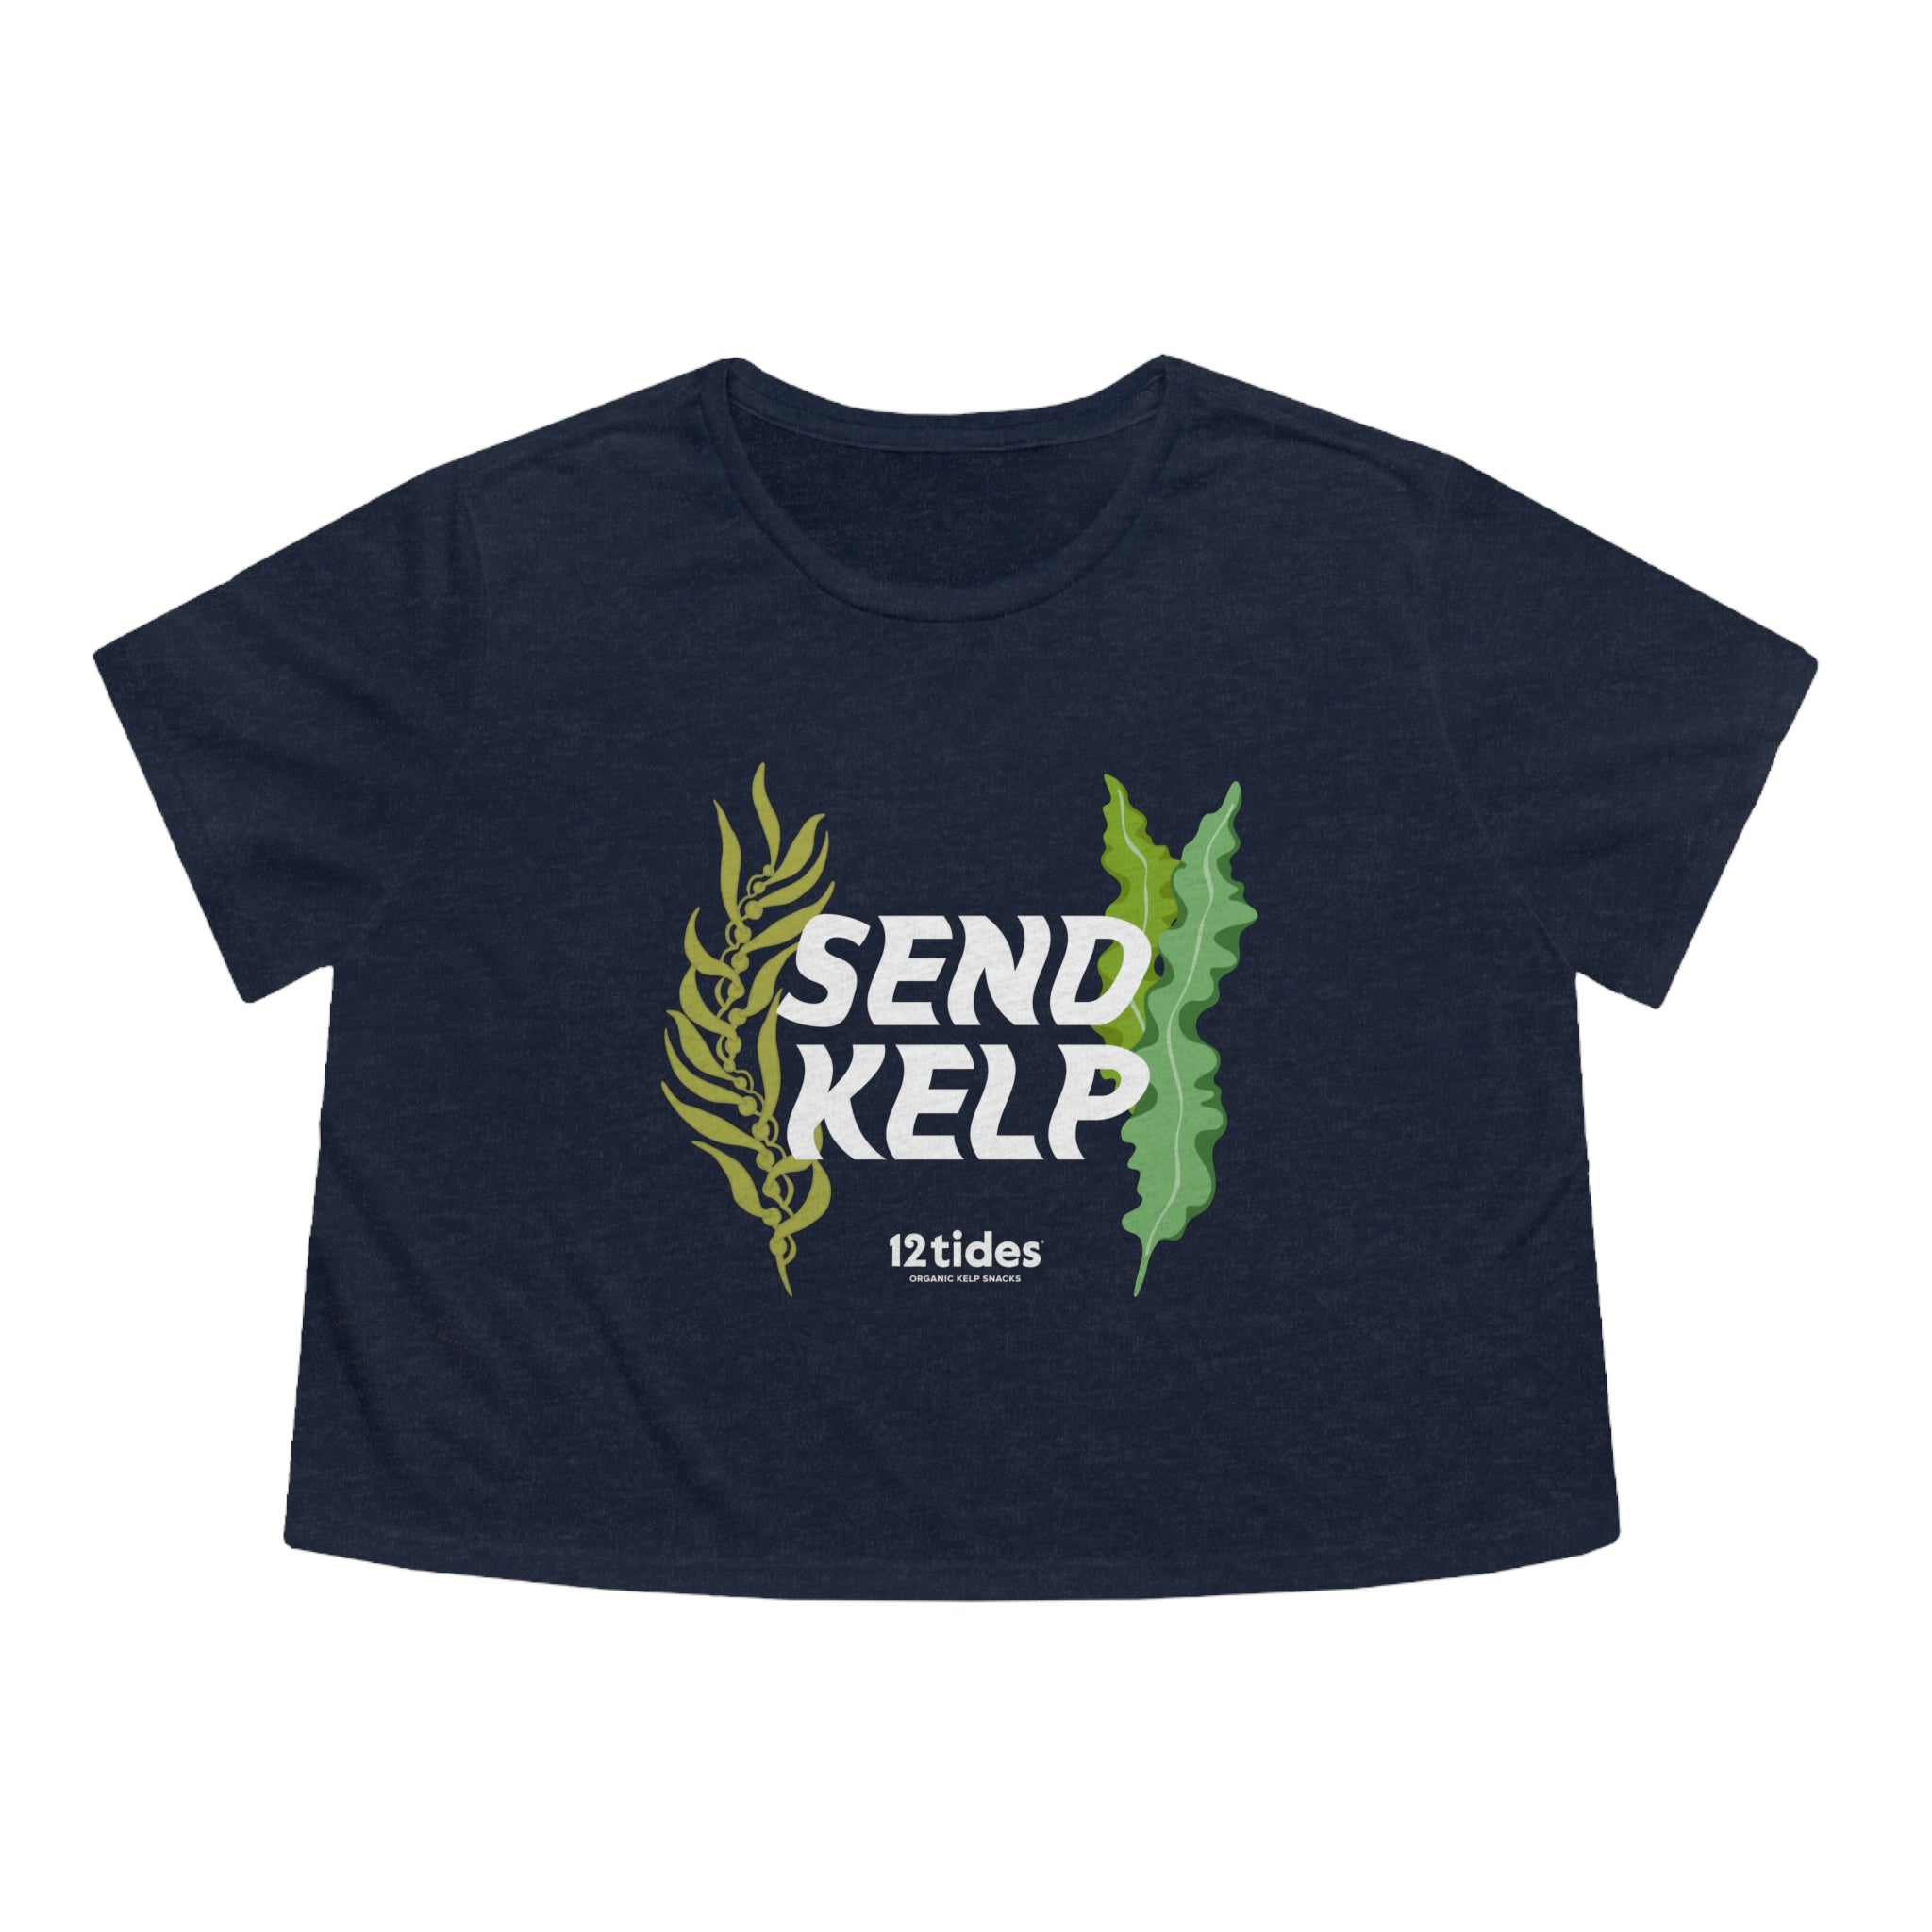 Send Kelp Crop Top